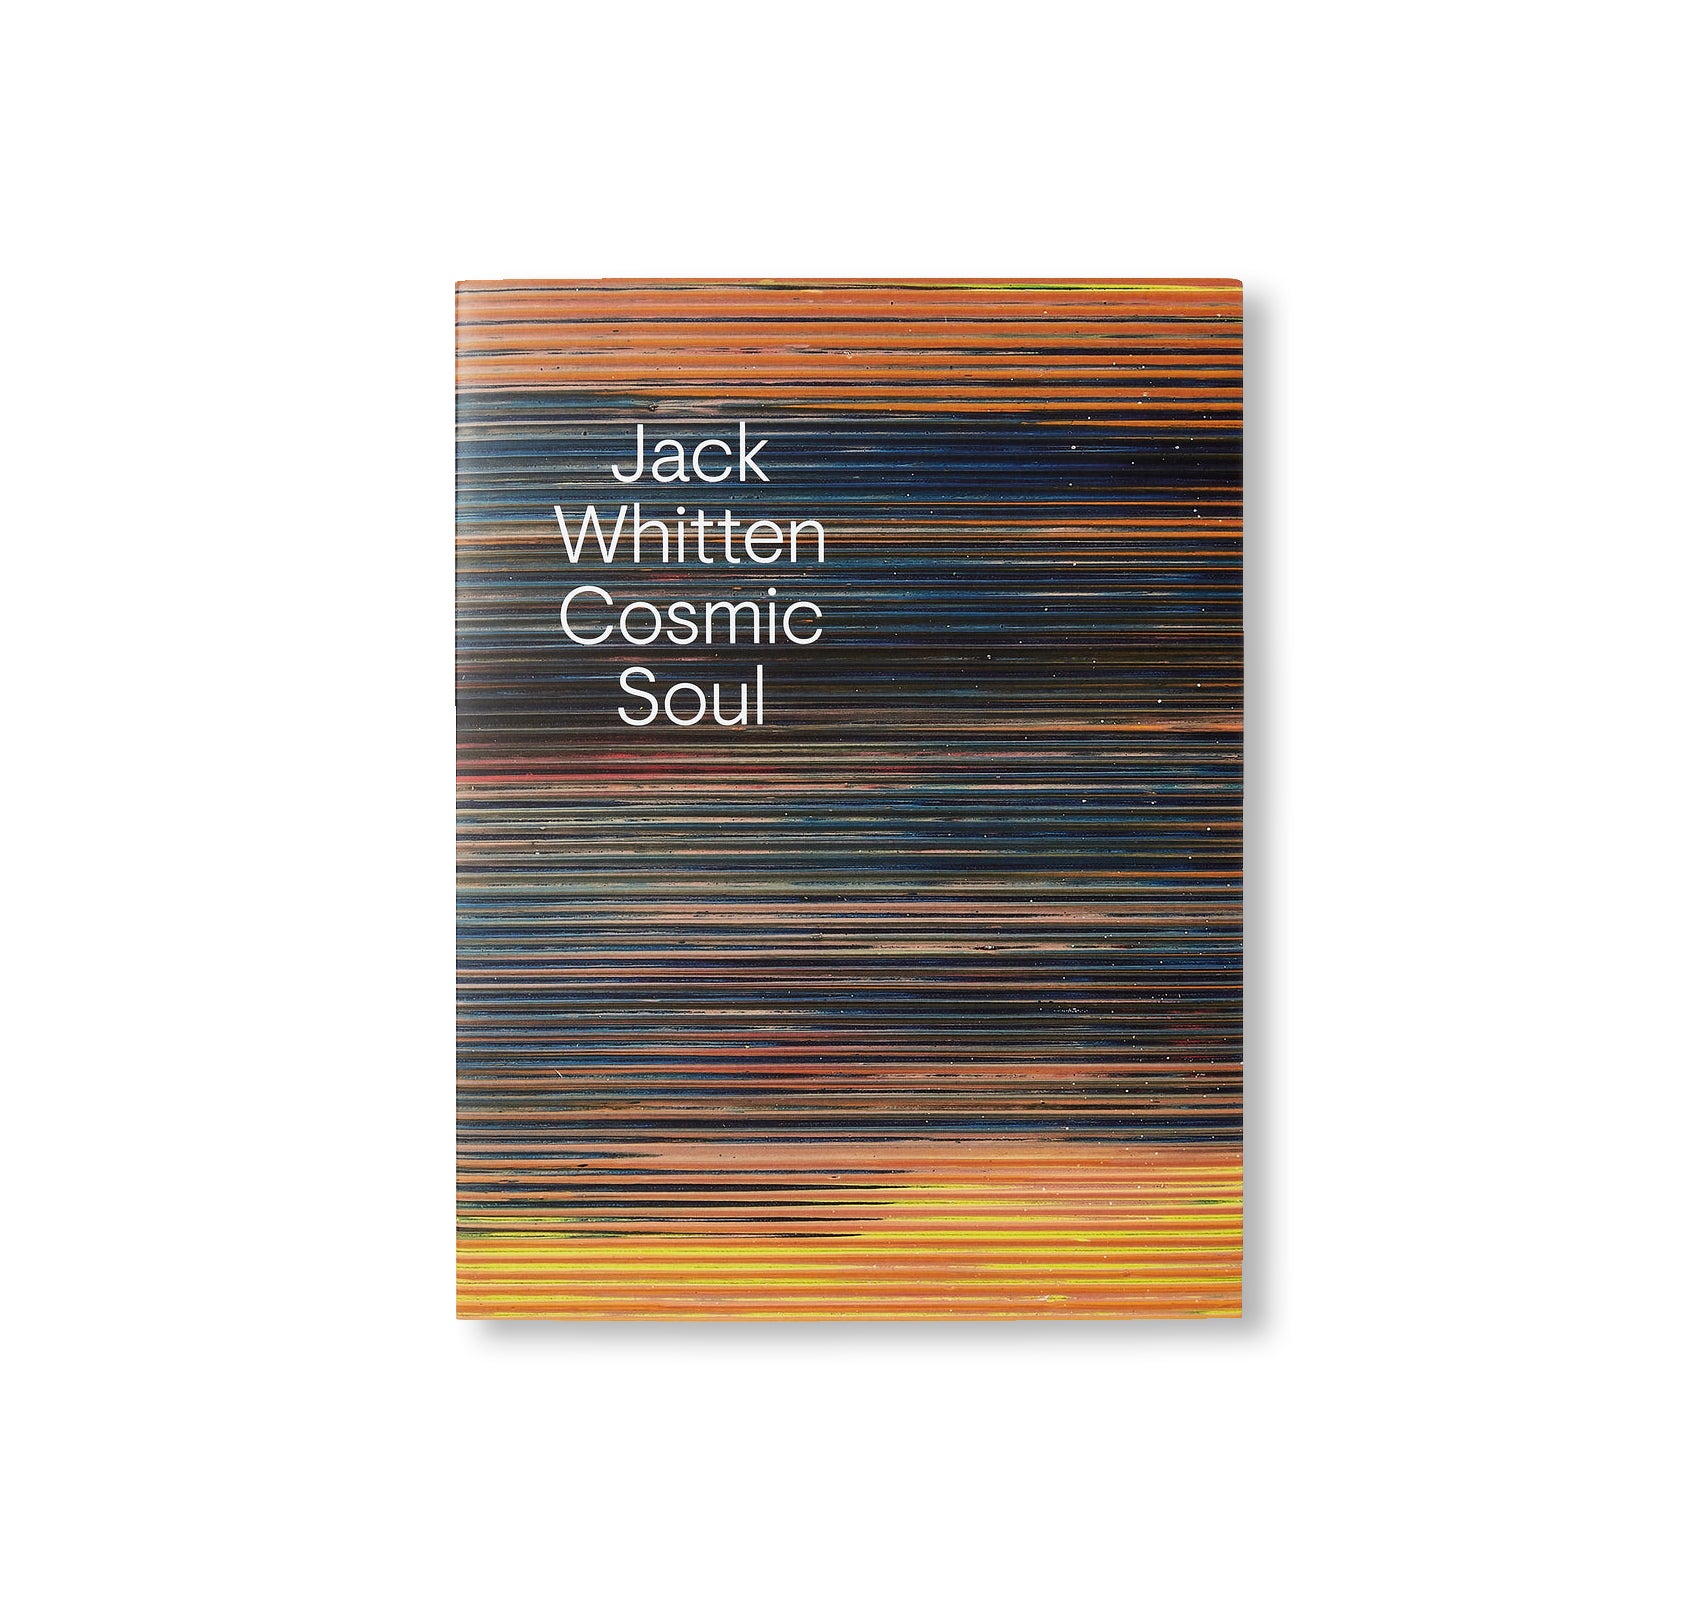 COSMIC SOUL by Jack Whitten